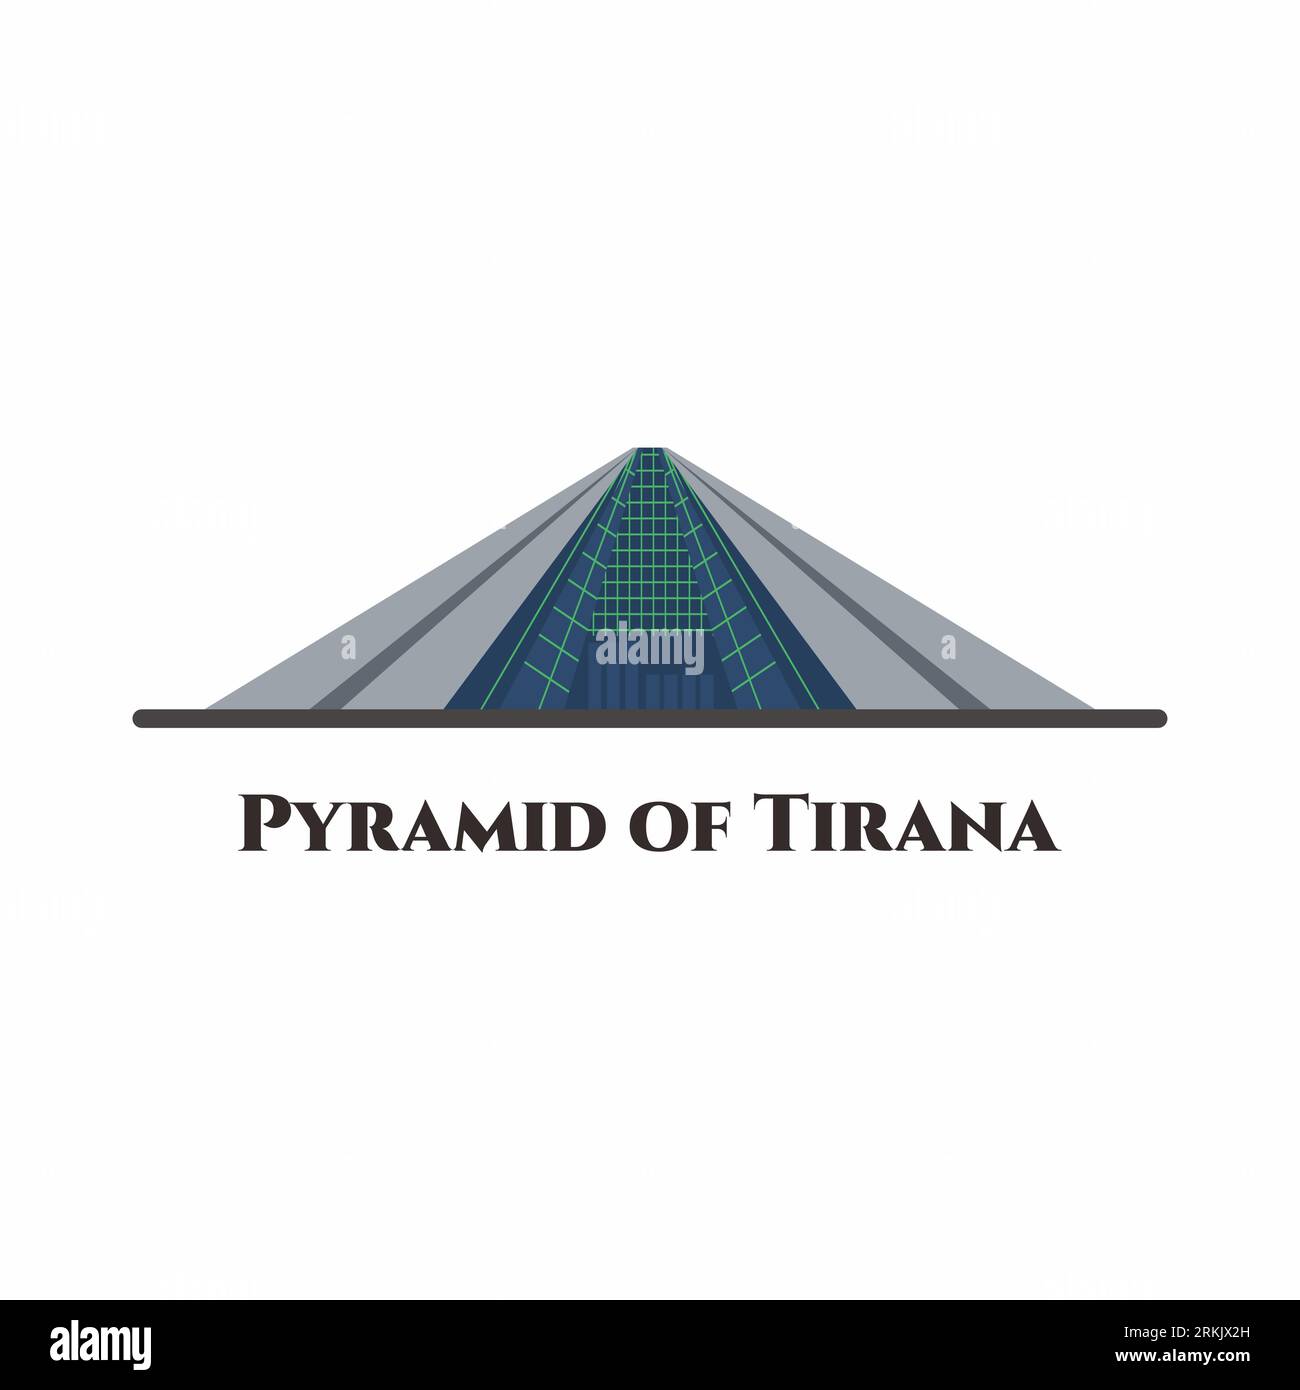 Die Pyramide von Tirana. Es ist ein Gebäude und ein ehemaliges Museum in Tirana, der Hauptstadt Albaniens. Eine gute Aussicht, muss dieses Hotel besuchen. Comic Buil Stock Vektor